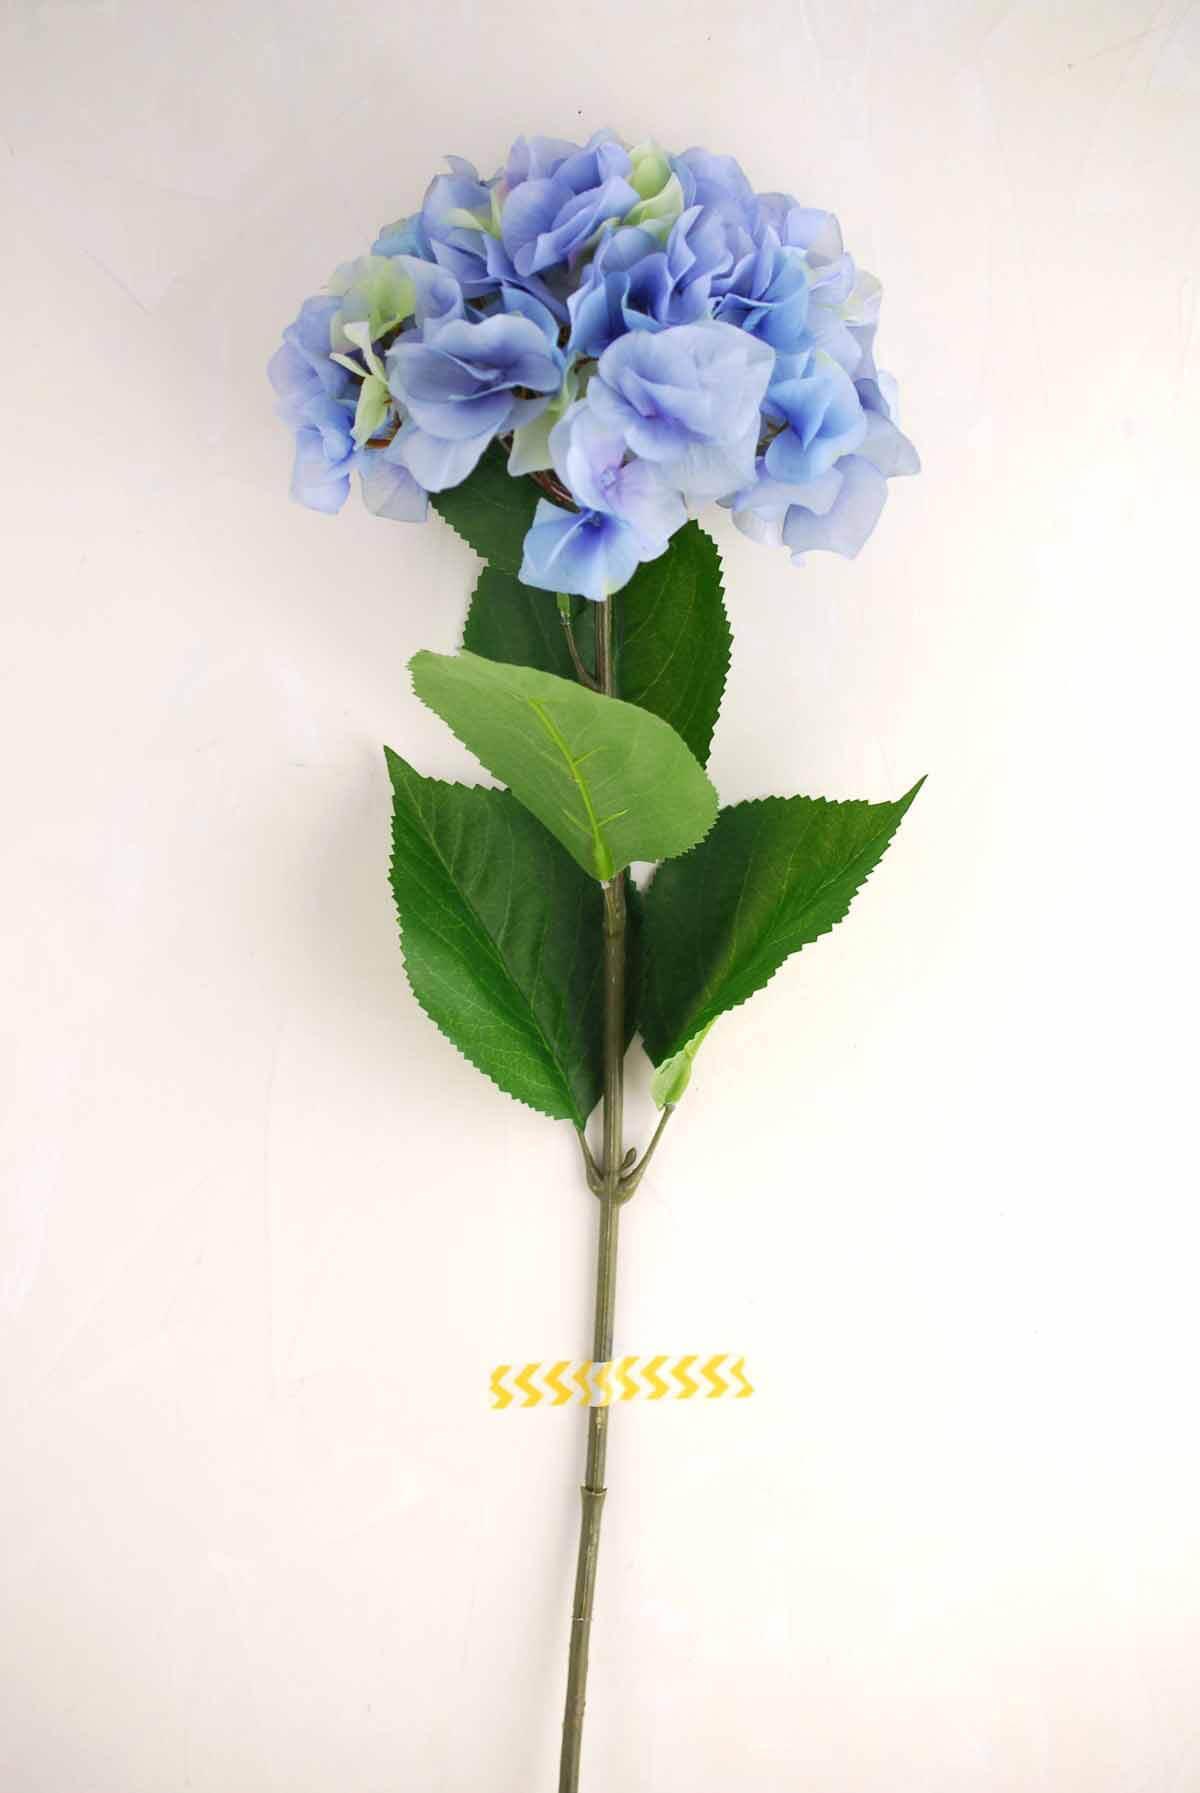 Blue Silk Hydrangea Flowers